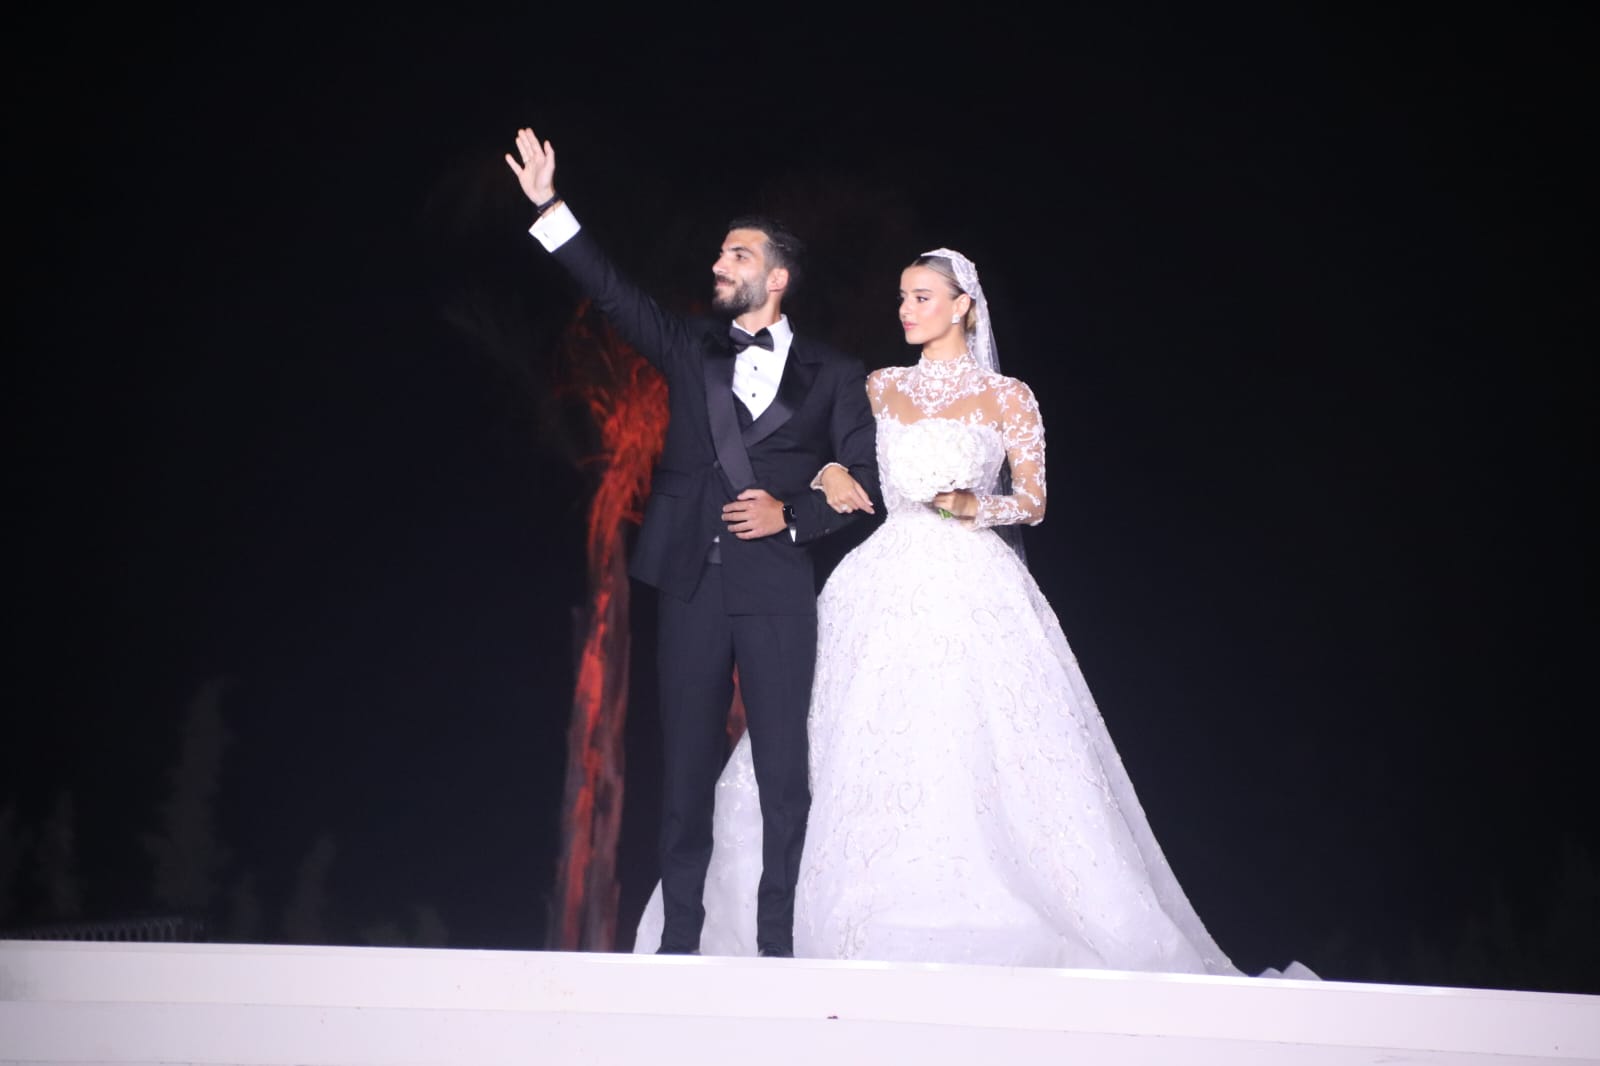 بالصور: حفل زفاف أحمد مرعي أبو مرعي ولين غسان عبد الجواد في "أبو مرعي هيلز"